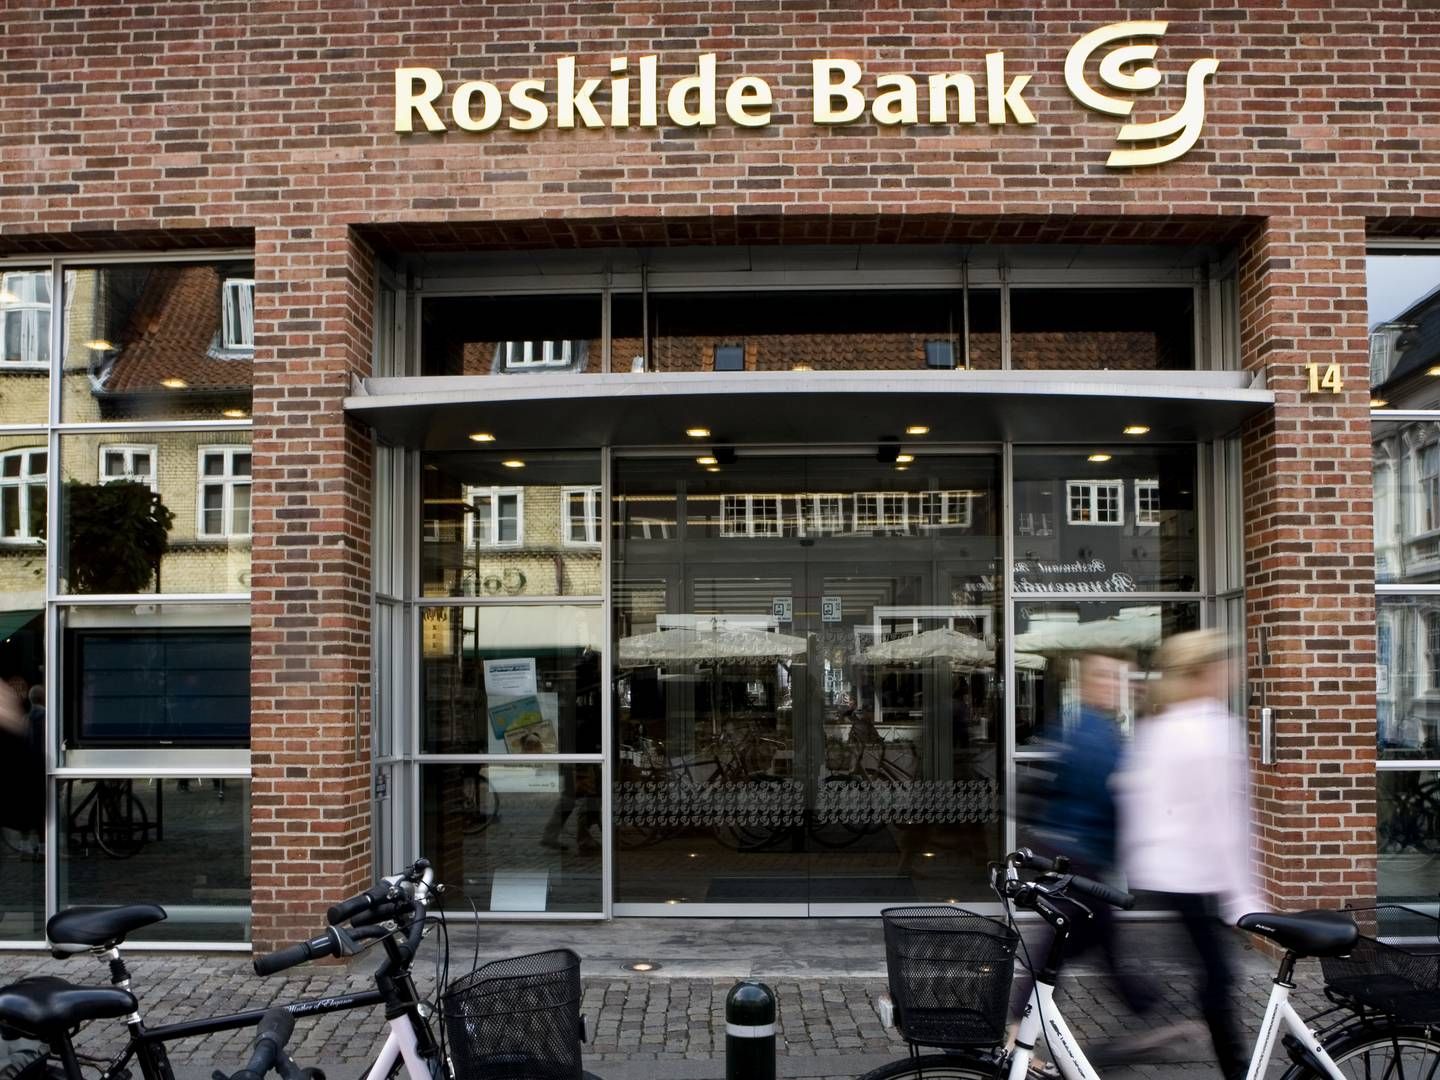 Krakket erhvervsmand var storkunde i Roskilde Bank under finanskrisen. | Foto: Sara Galbiati